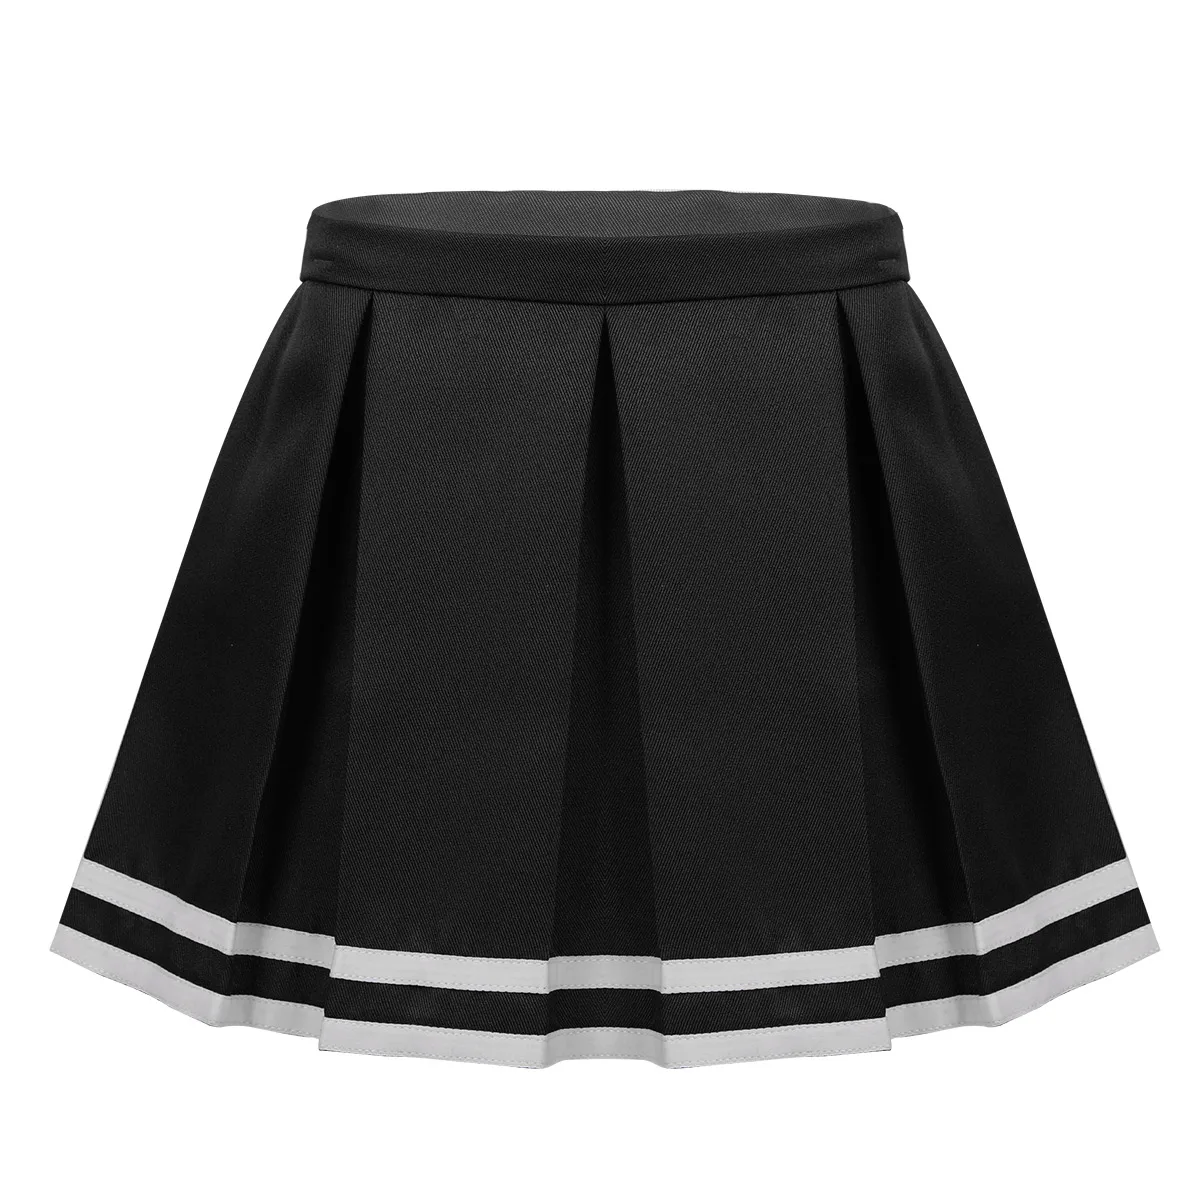 Юбки для девочек-подростков; школьная форма; юбки-пачки; плиссированная юбка на молнии сбоку; юбка для черлеев; модная детская одежда - Цвет: Black